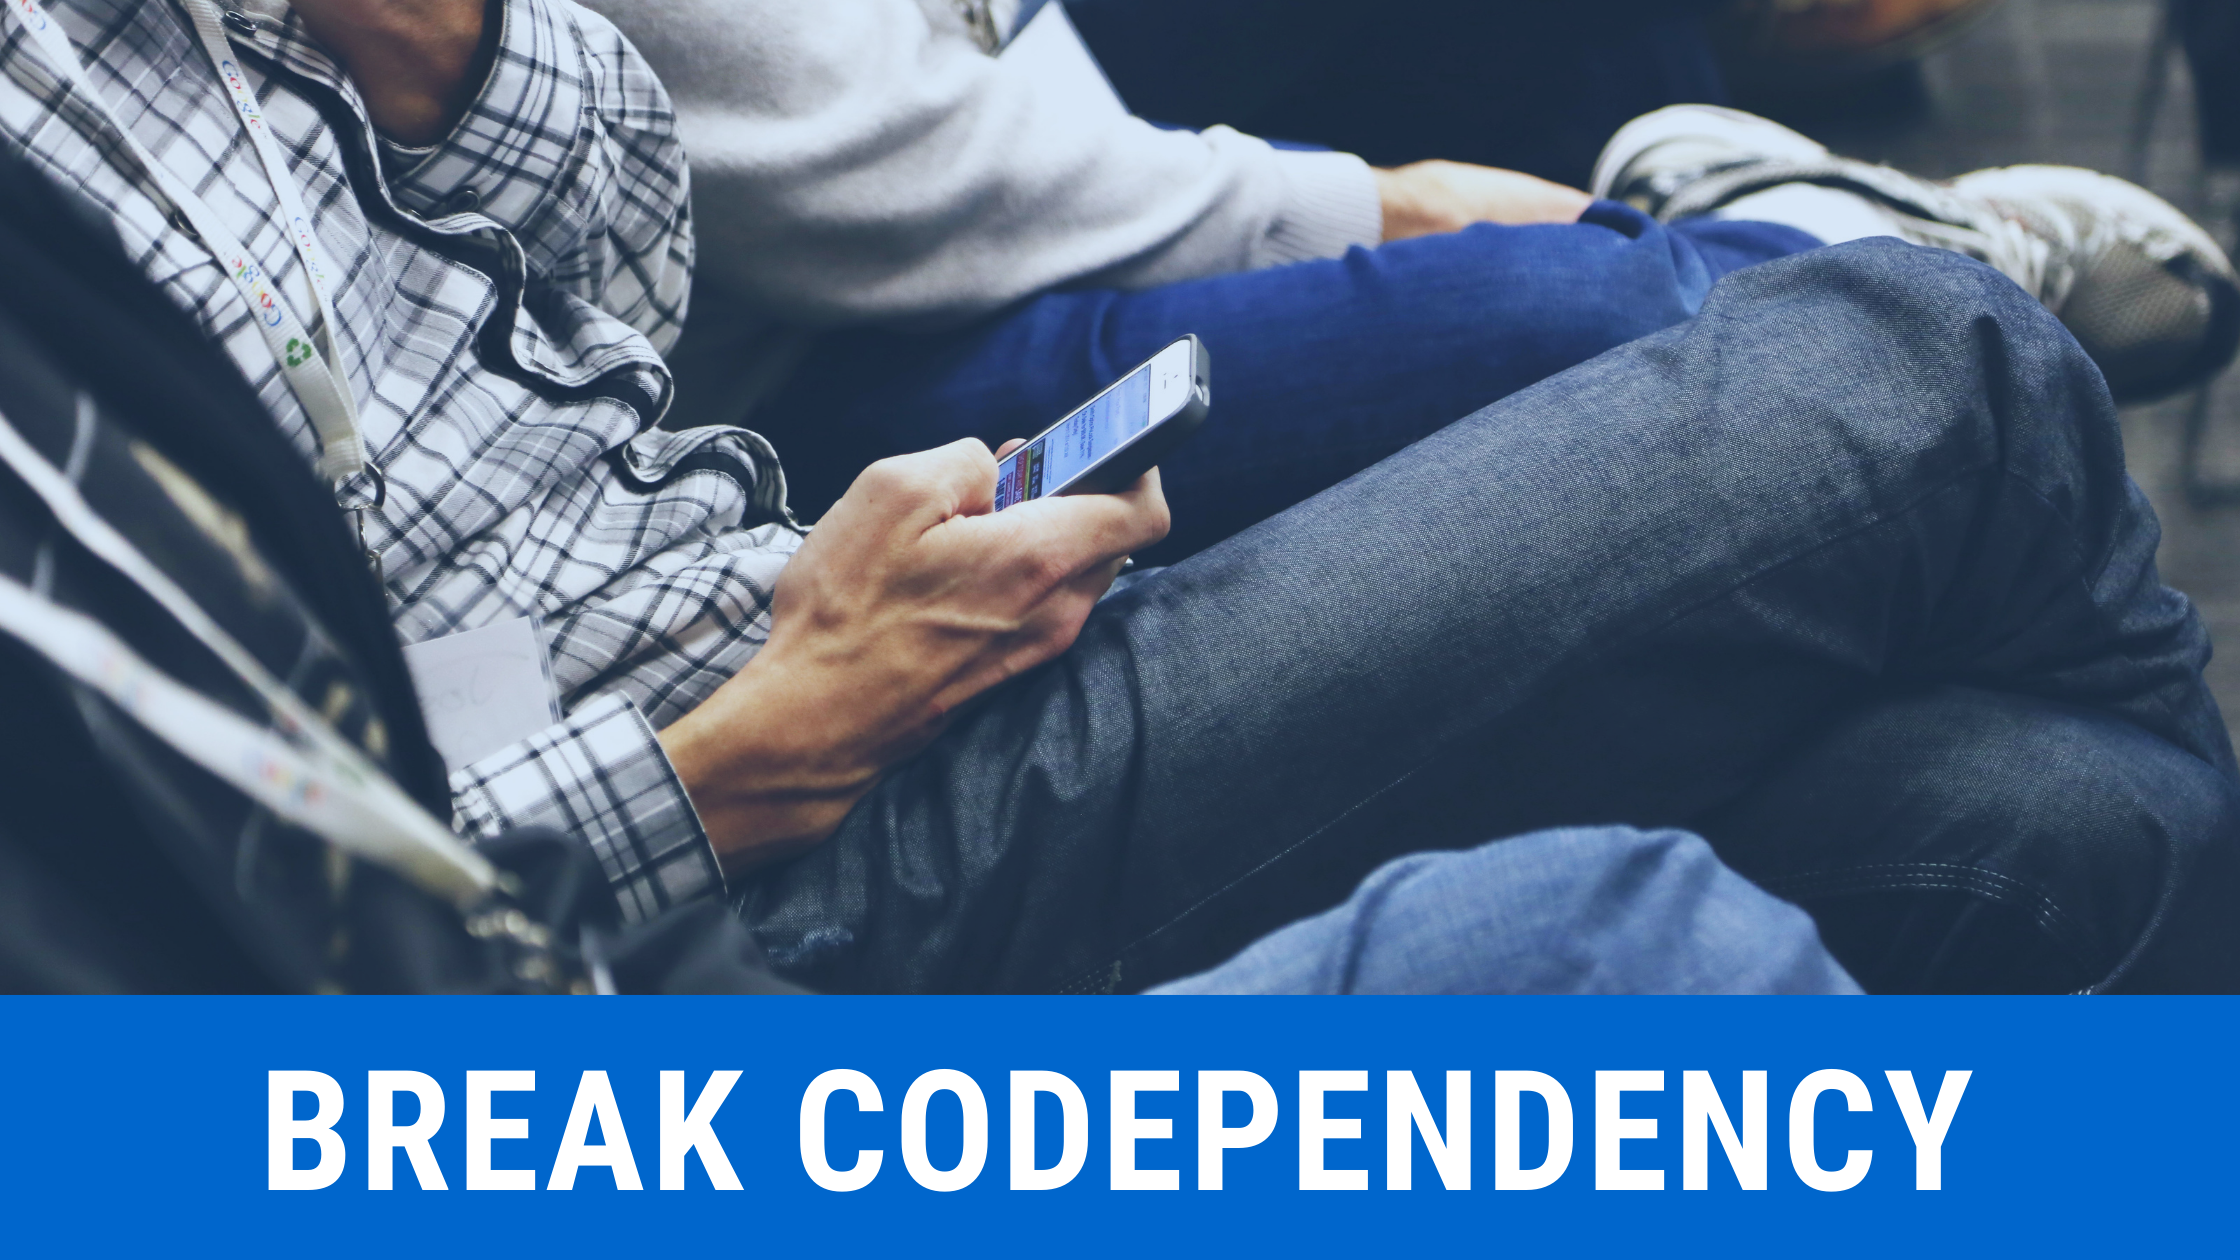 Break Codependency & People-Pleasing By Choosing Yourself